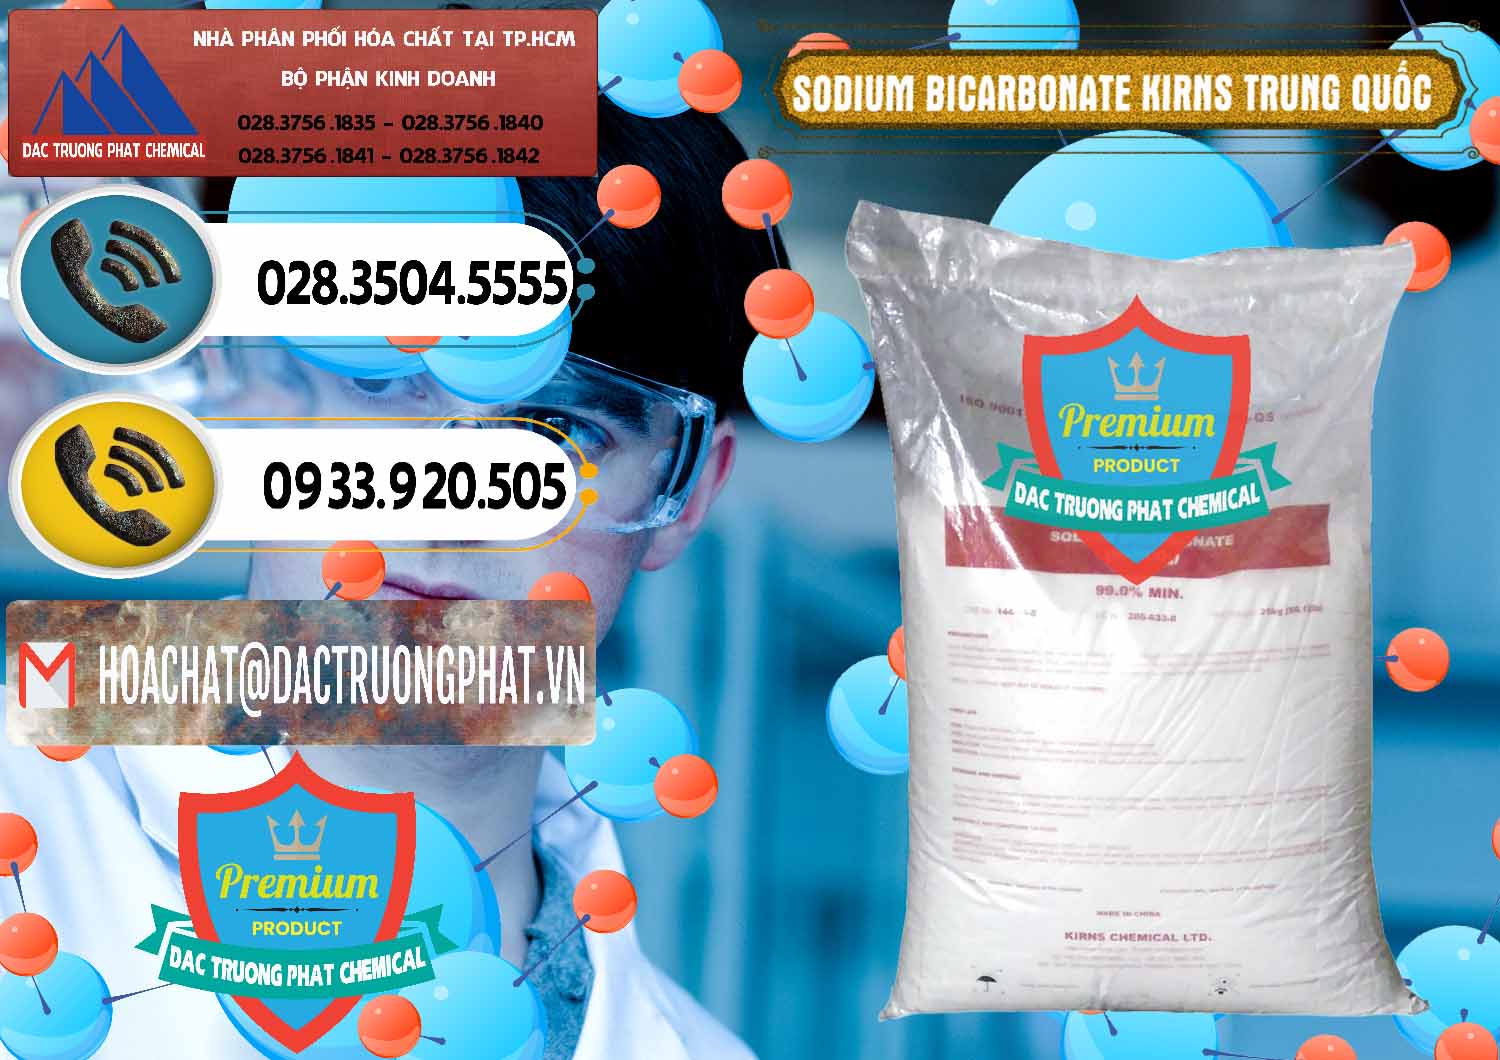 Đơn vị cung ứng & bán Sodium Bicarbonate – Bicar NaHCO3 Food Grade Kirns Trung Quốc - 0217 - Công ty kinh doanh - phân phối hóa chất tại TP.HCM - hoachatdetnhuom.vn